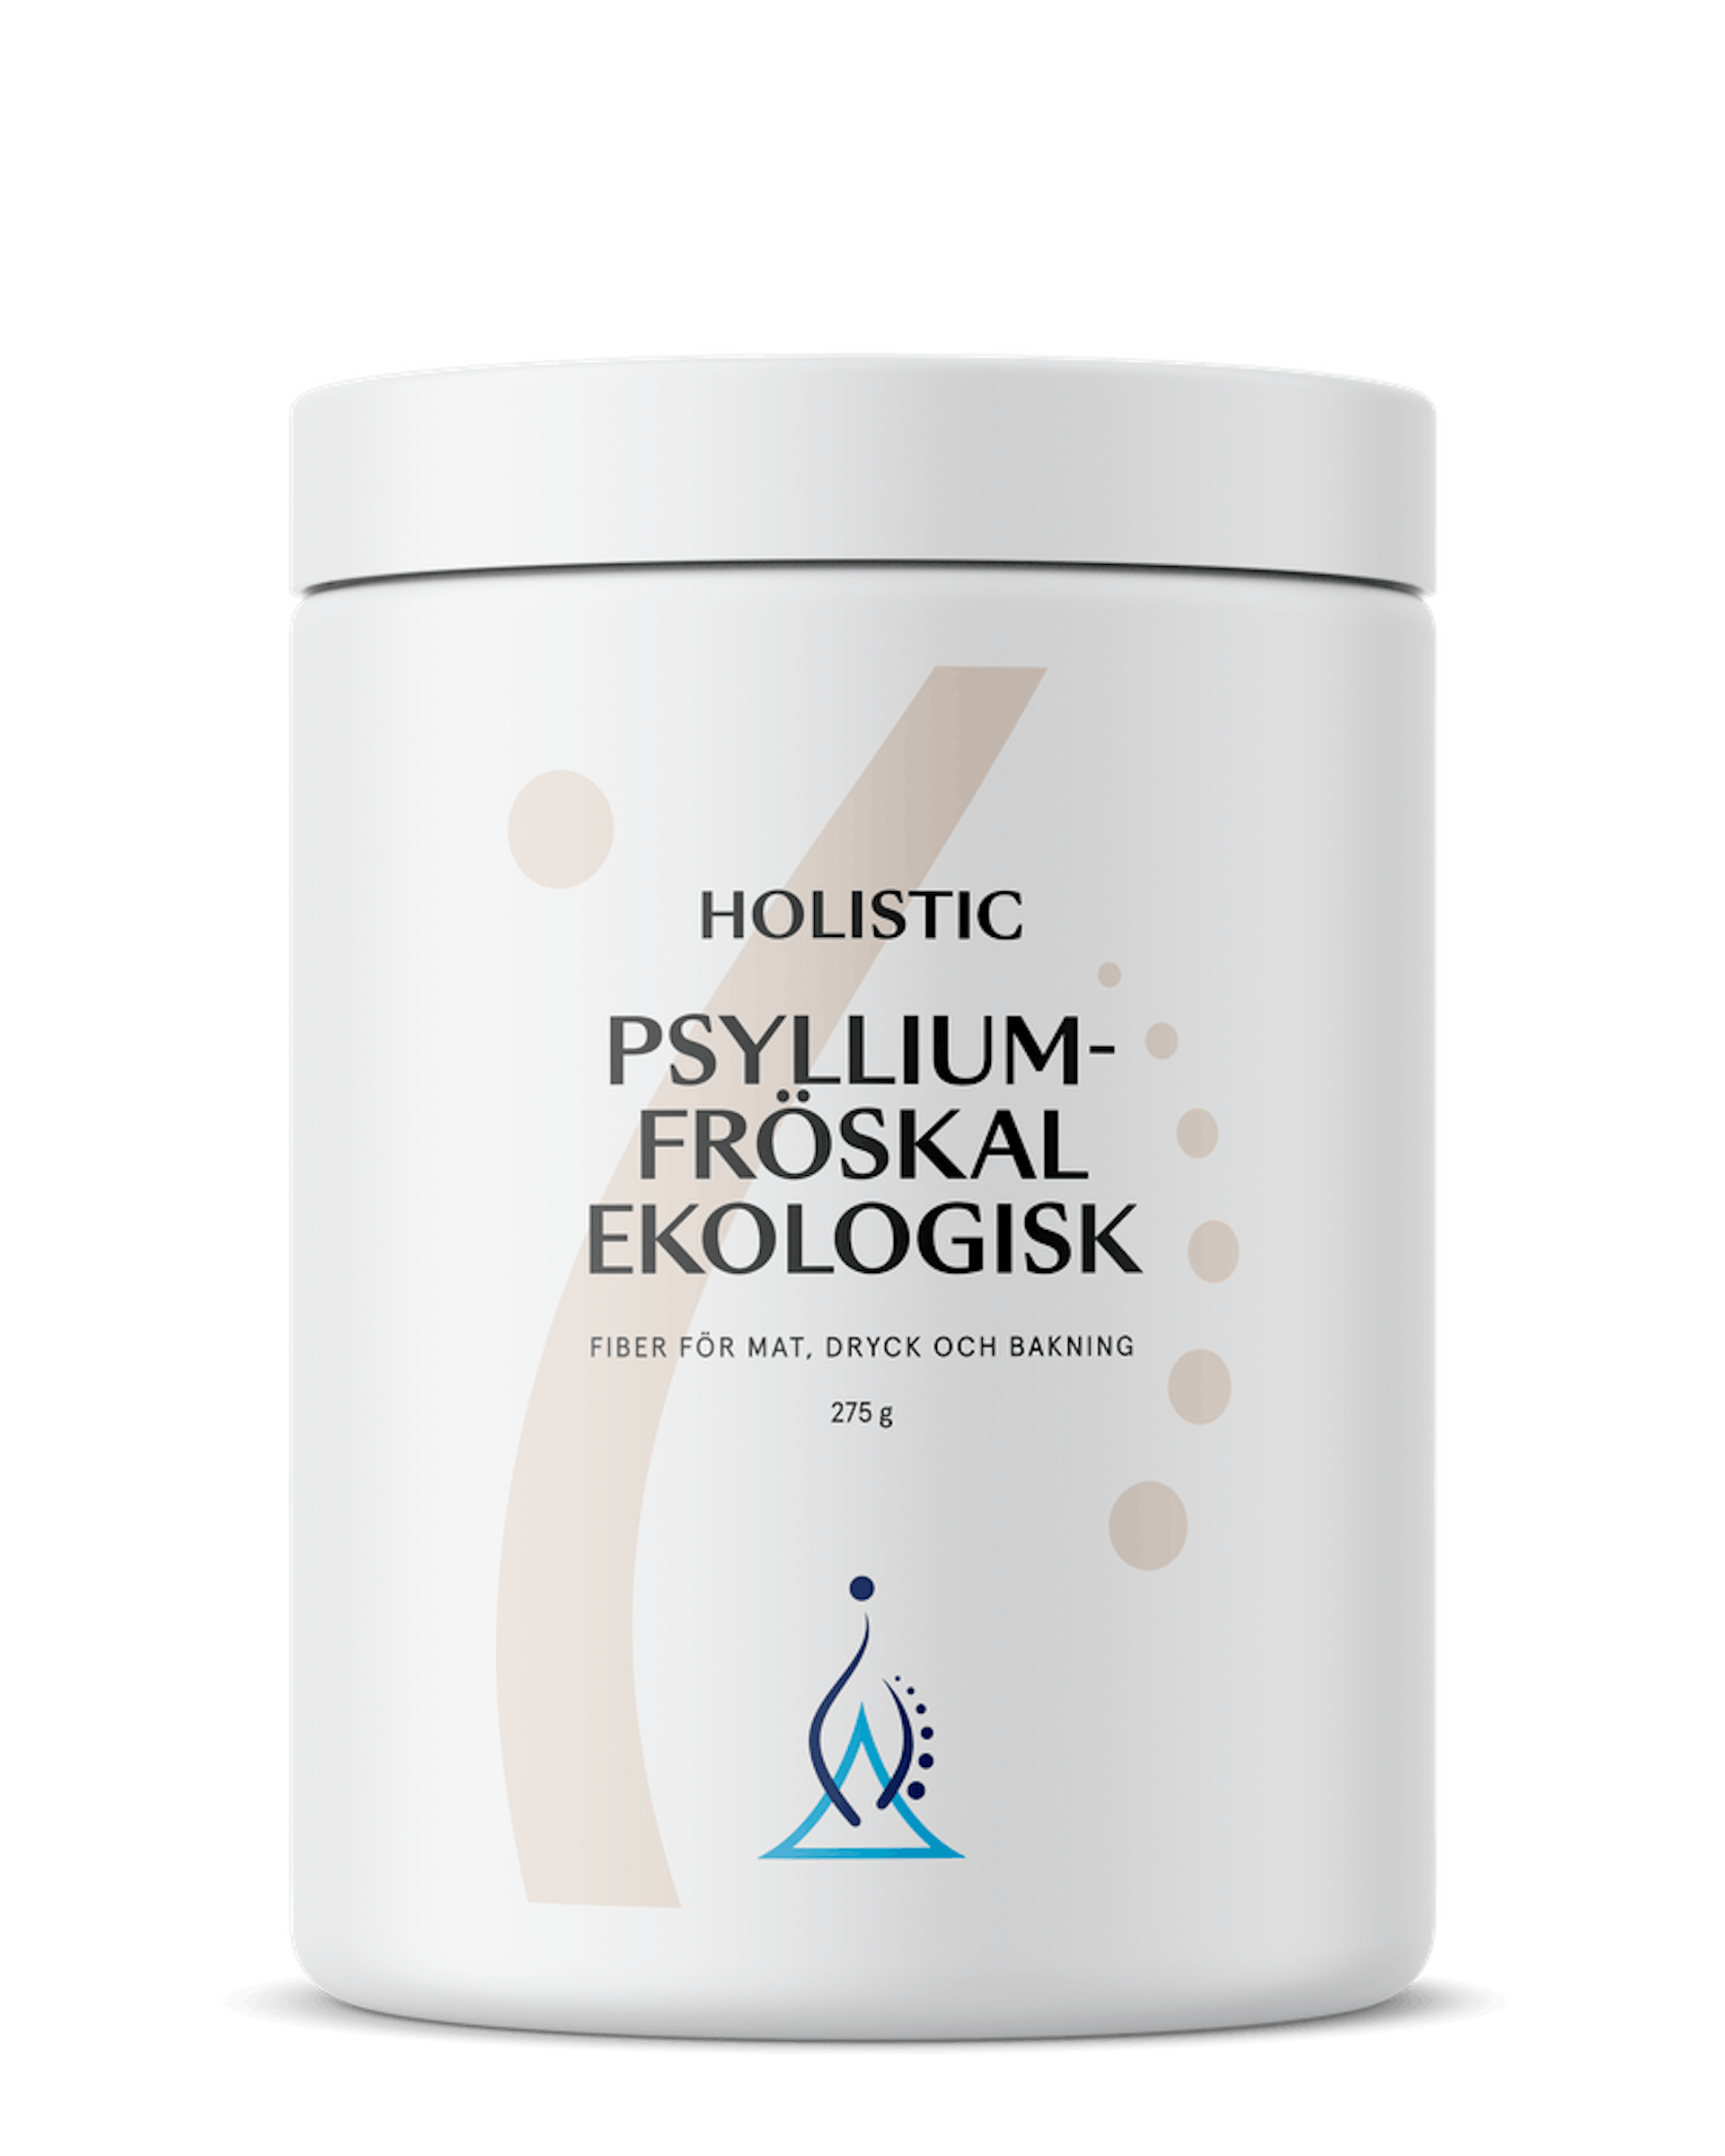 Psylliumfröskal ekologisk, 275 g